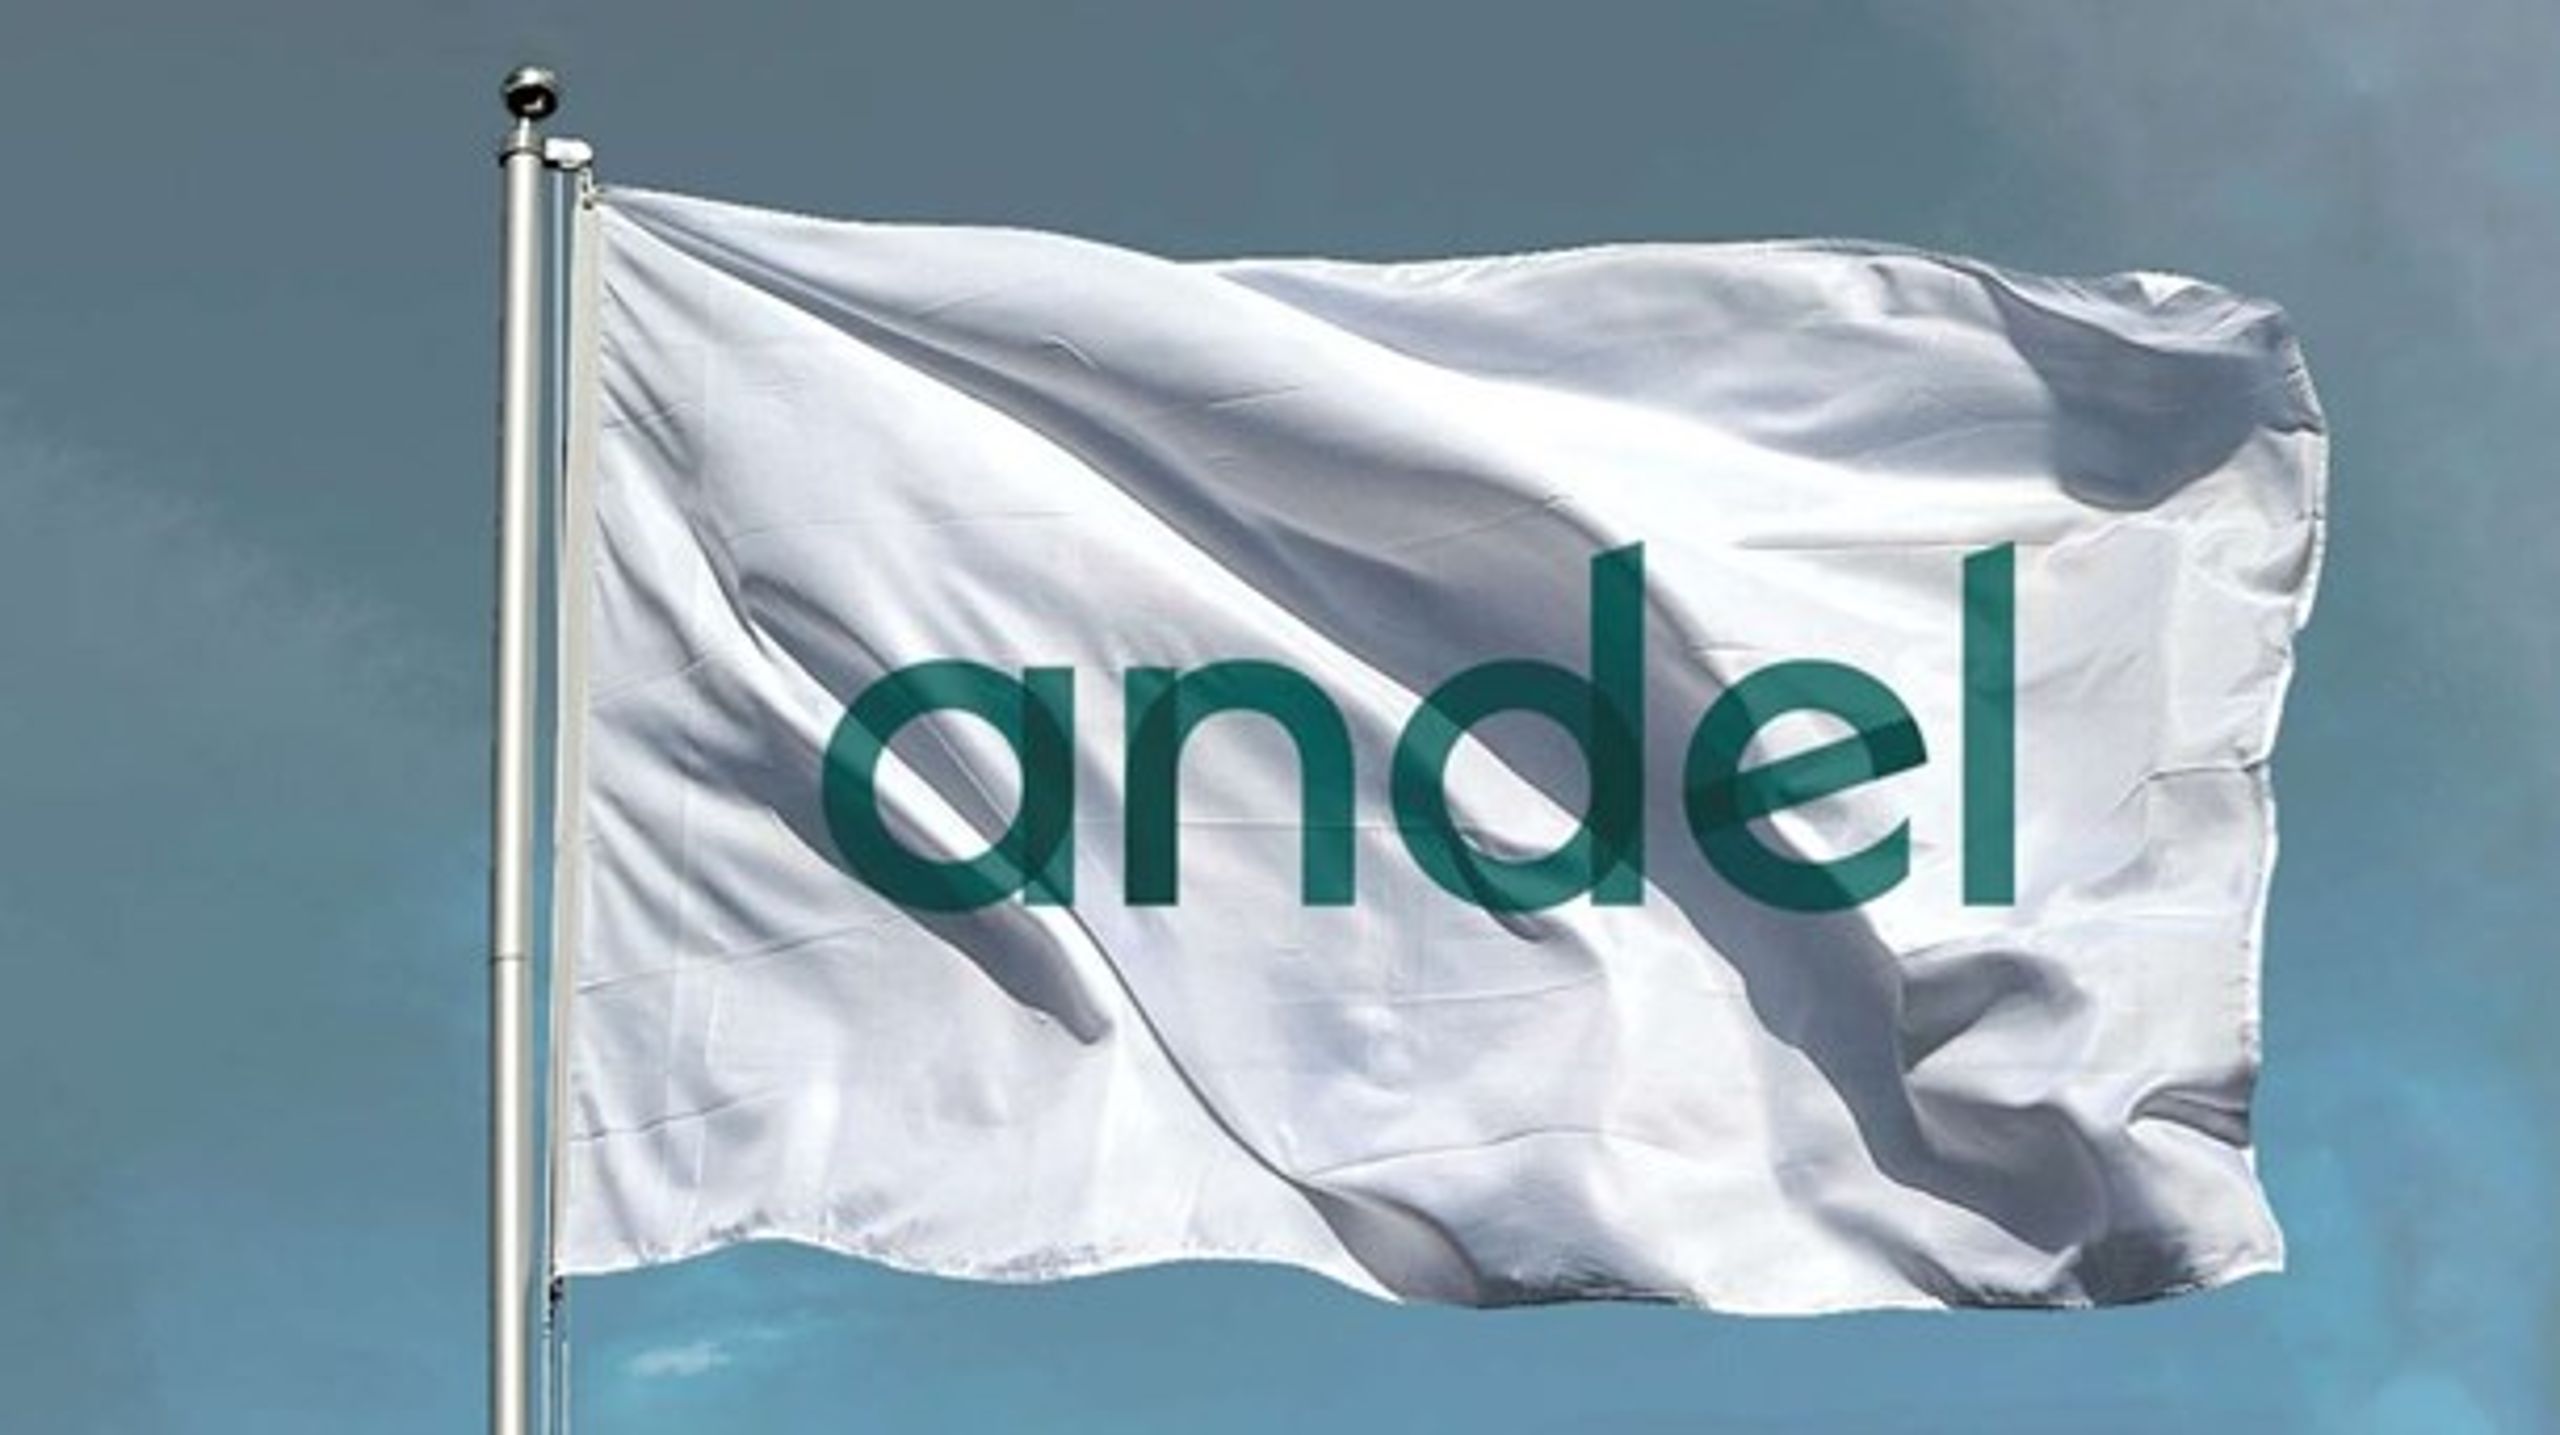 Andel erstatter navnet Seas-NVE, der er sammenkobling af Sydsjællands Elektricitets Aktieselskab og Nordvestsjællands Elektricitetsværk, som fusionerede i 2005.